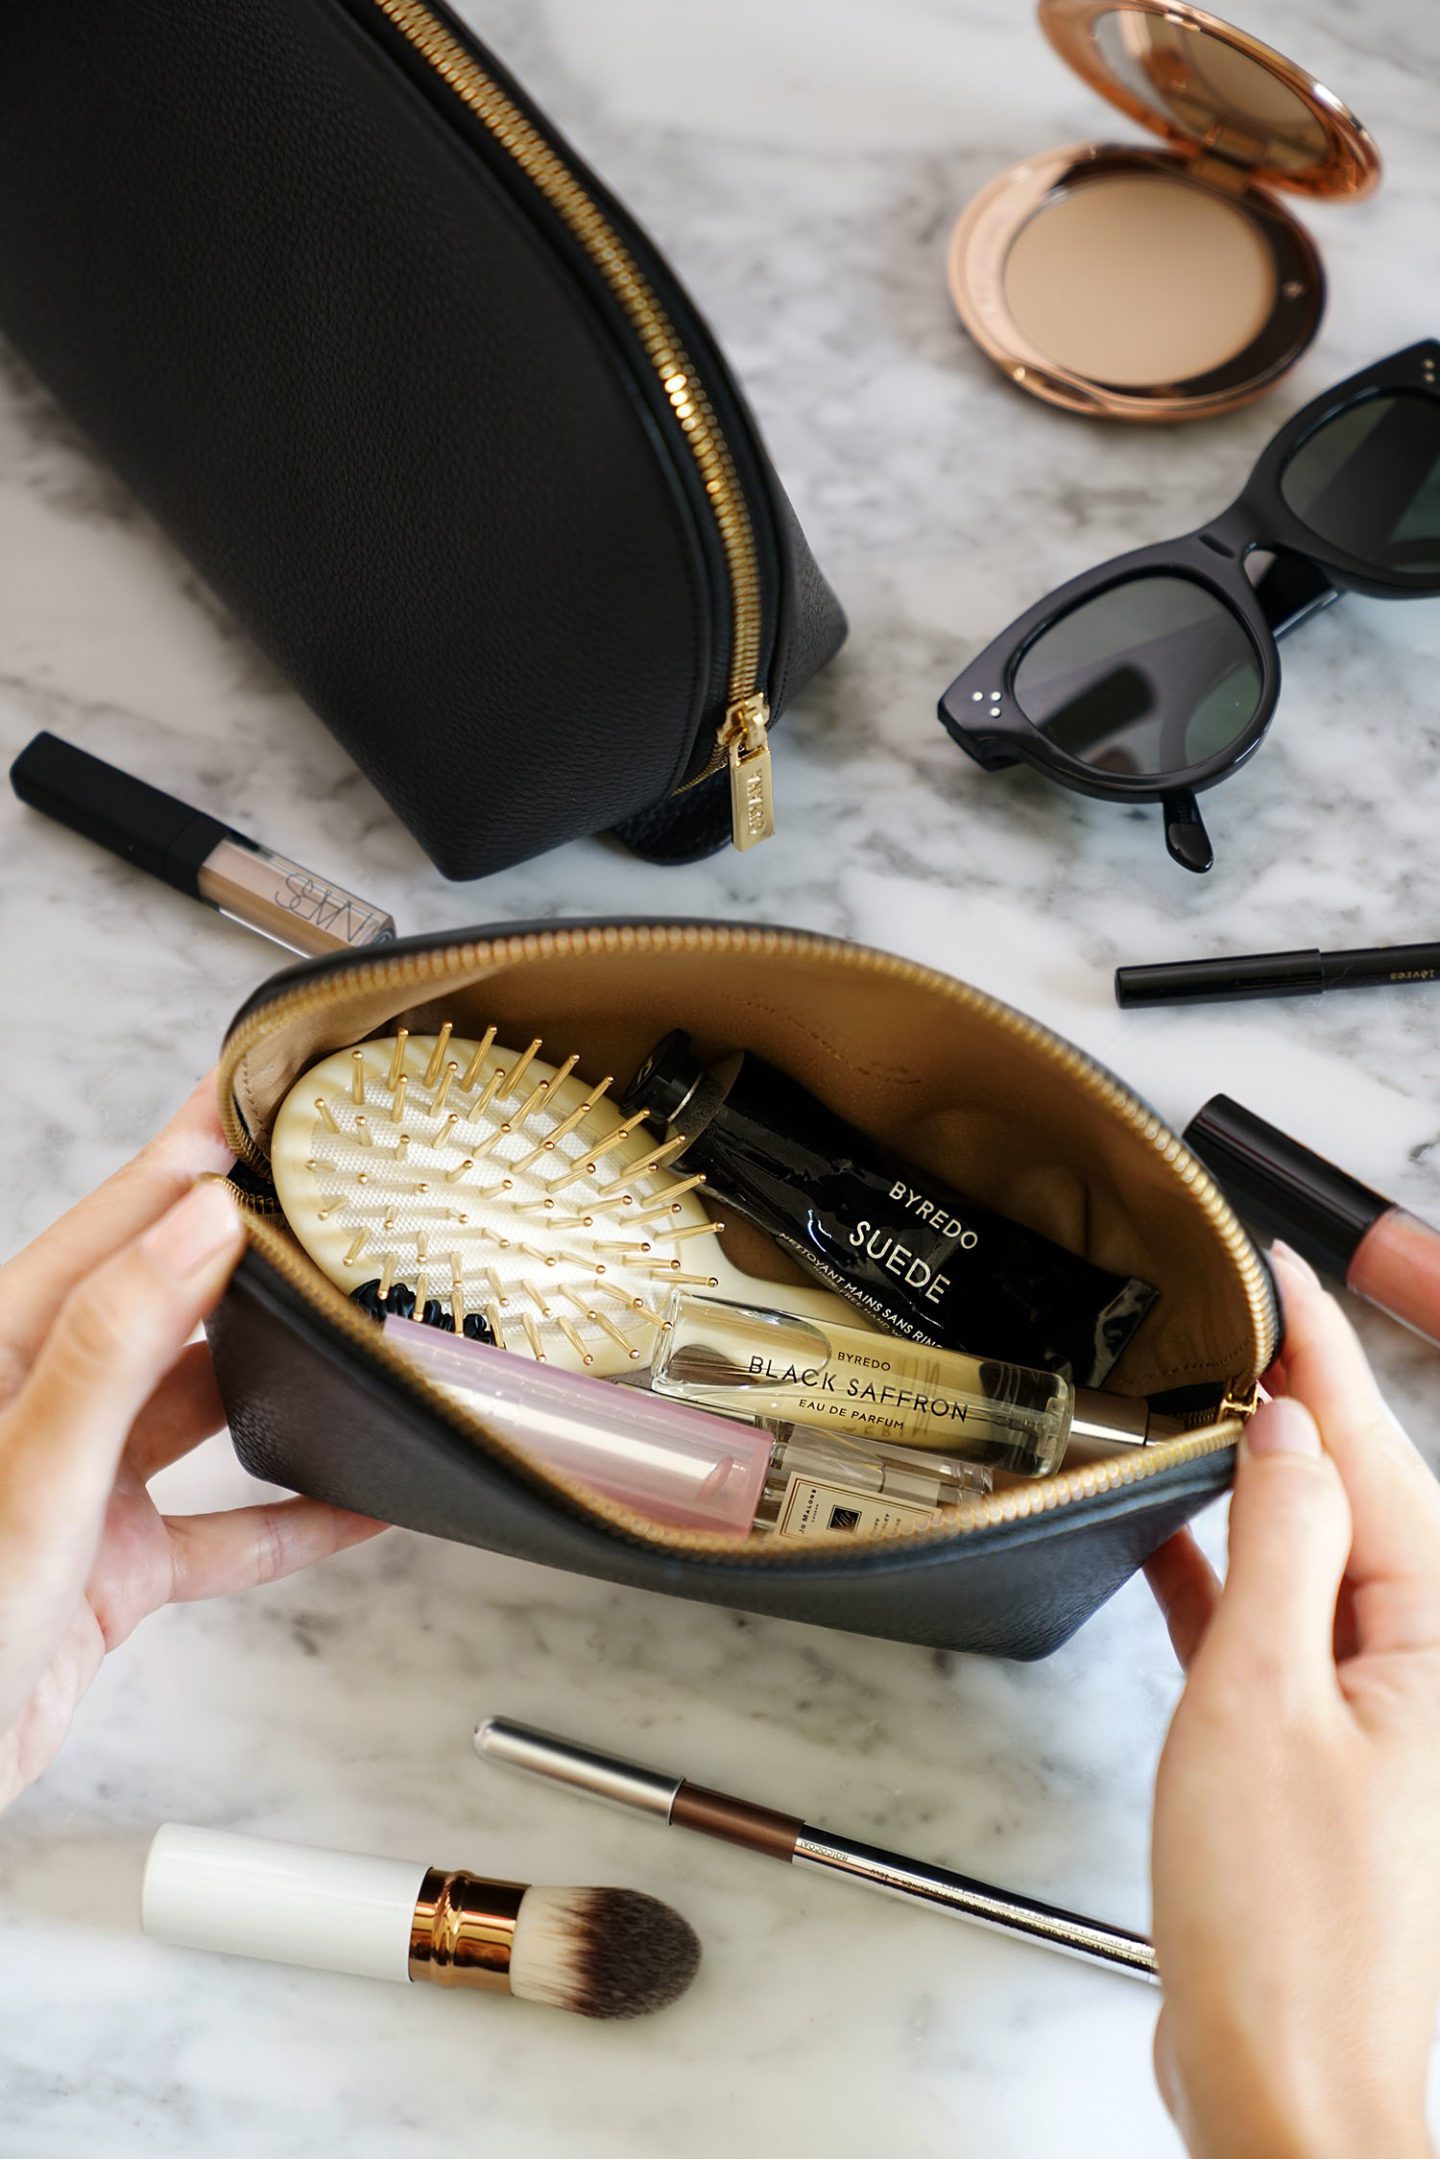 Makeup Bag Essentials